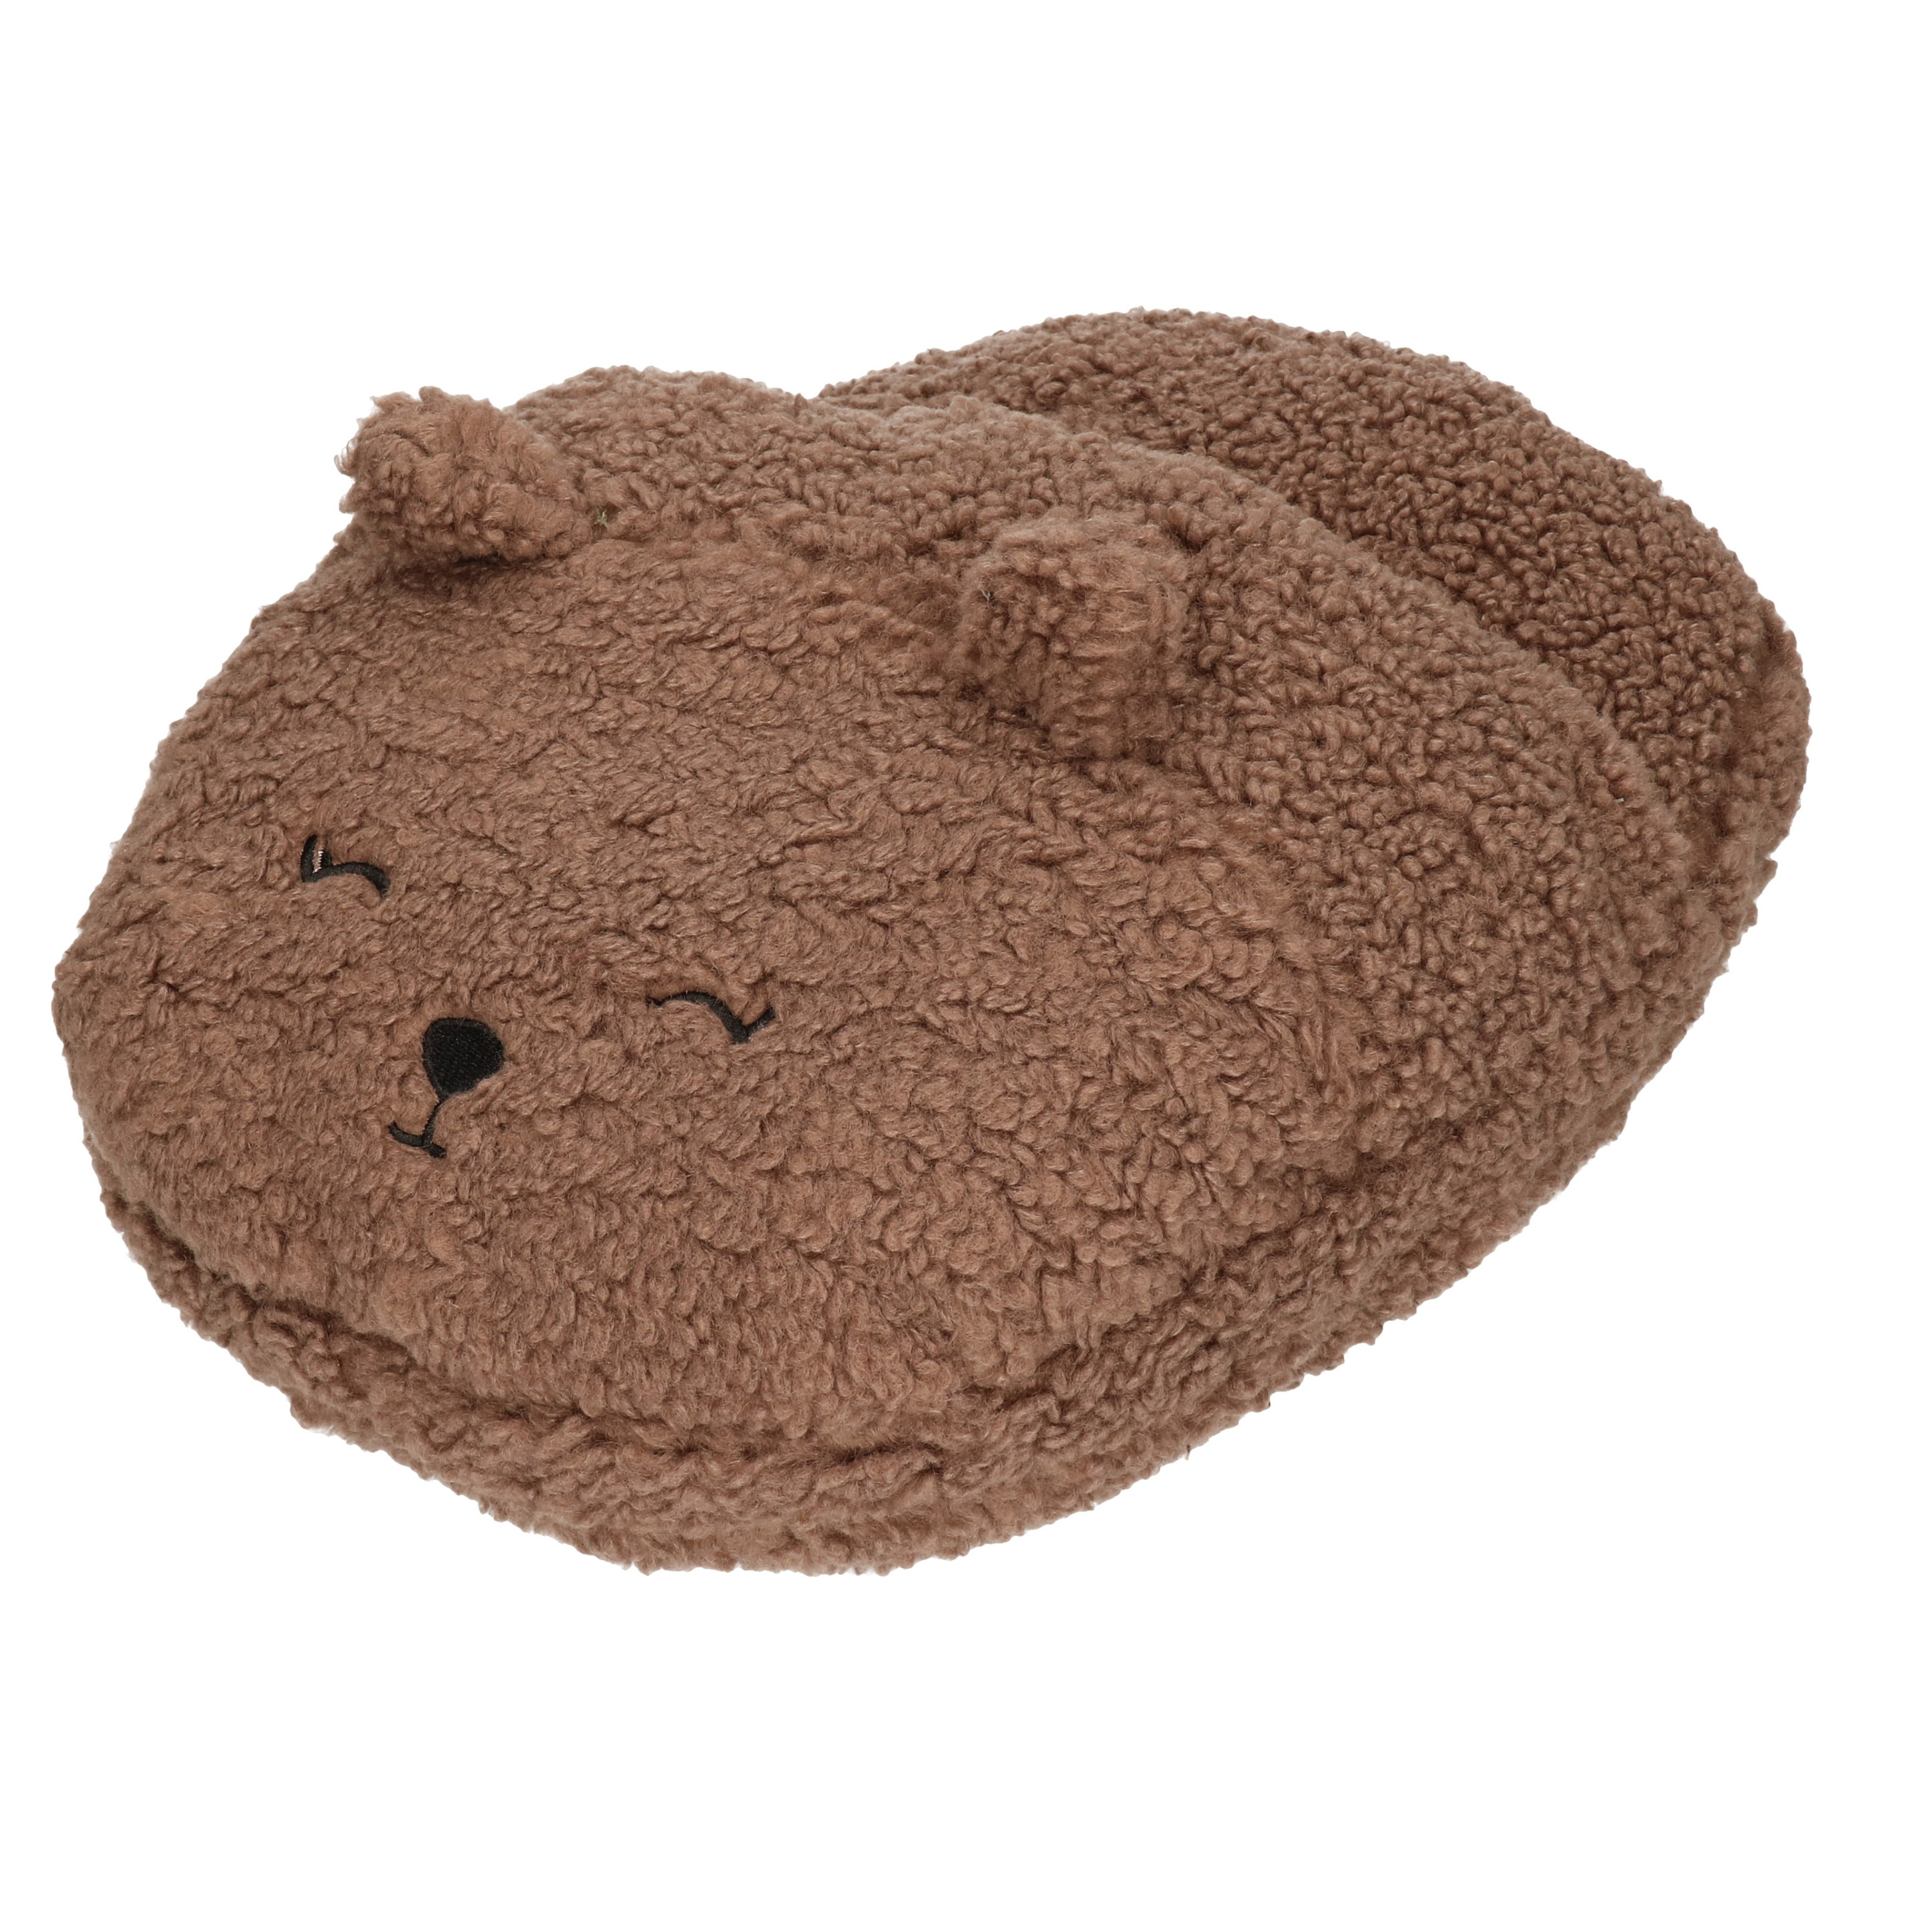 Grote voetenwarmer pantoffel/slof beer chocolade bruin one size 30 x 27 cm